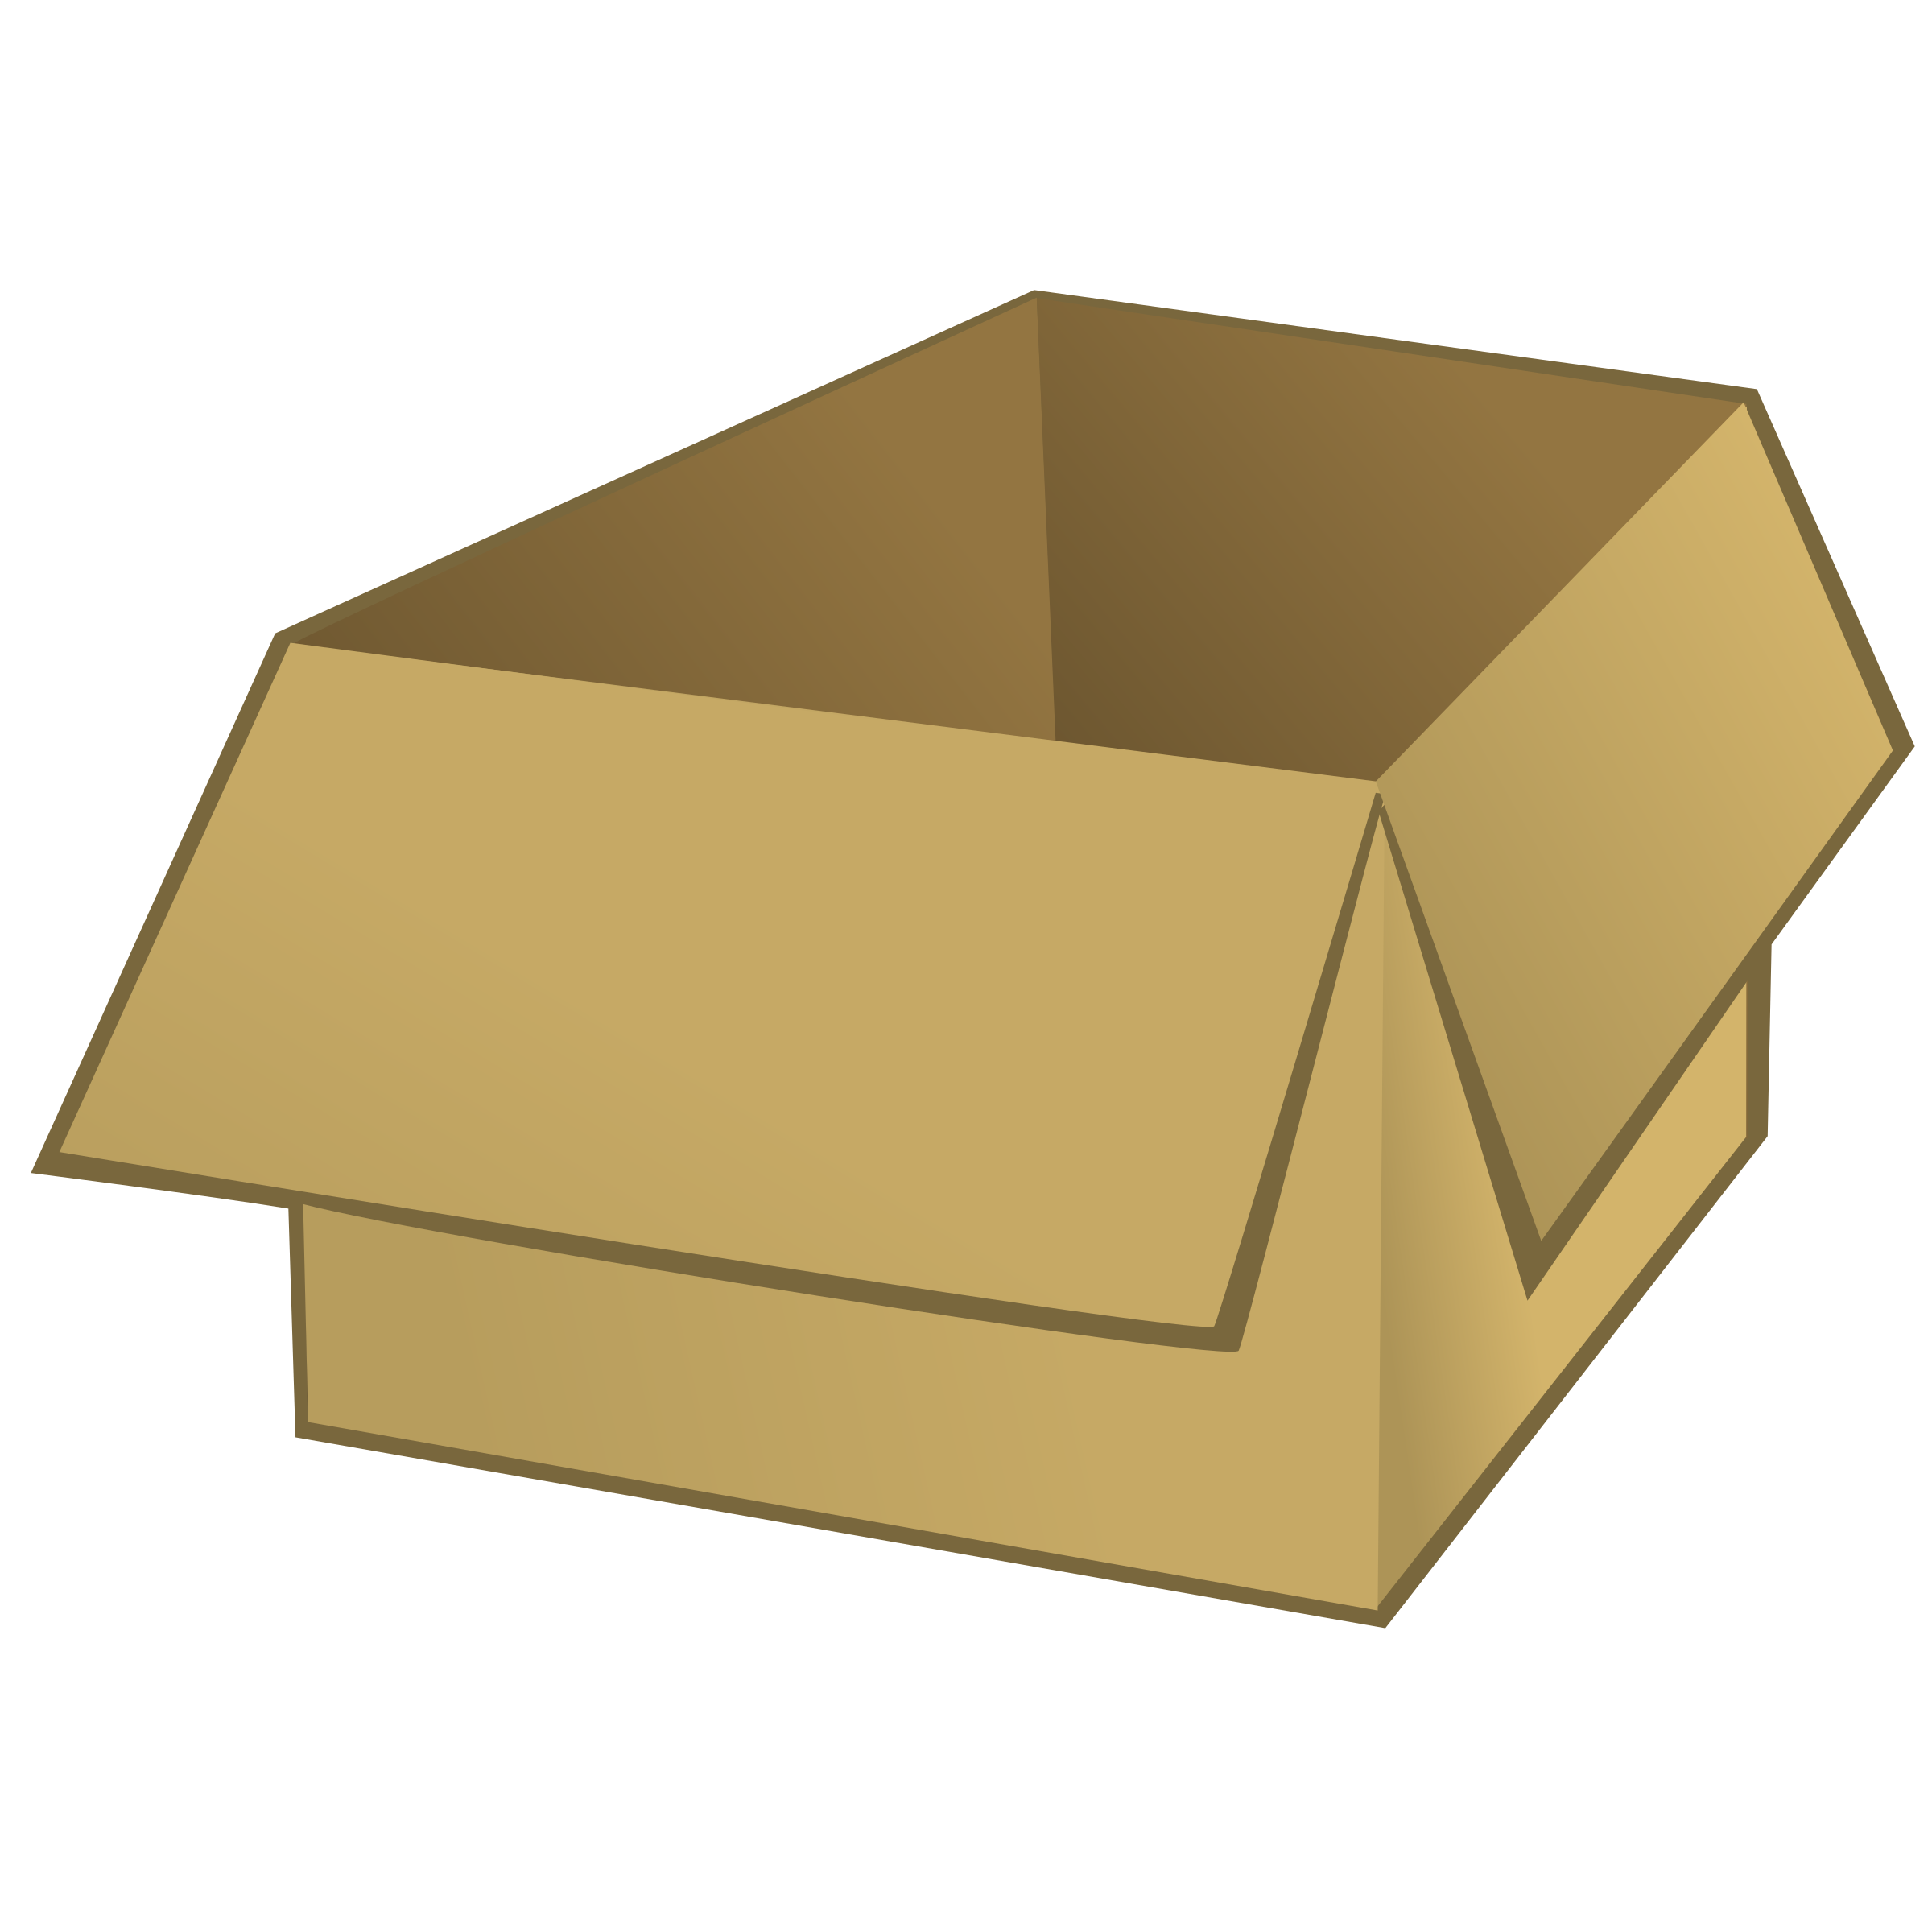 Karton, kağit kutu